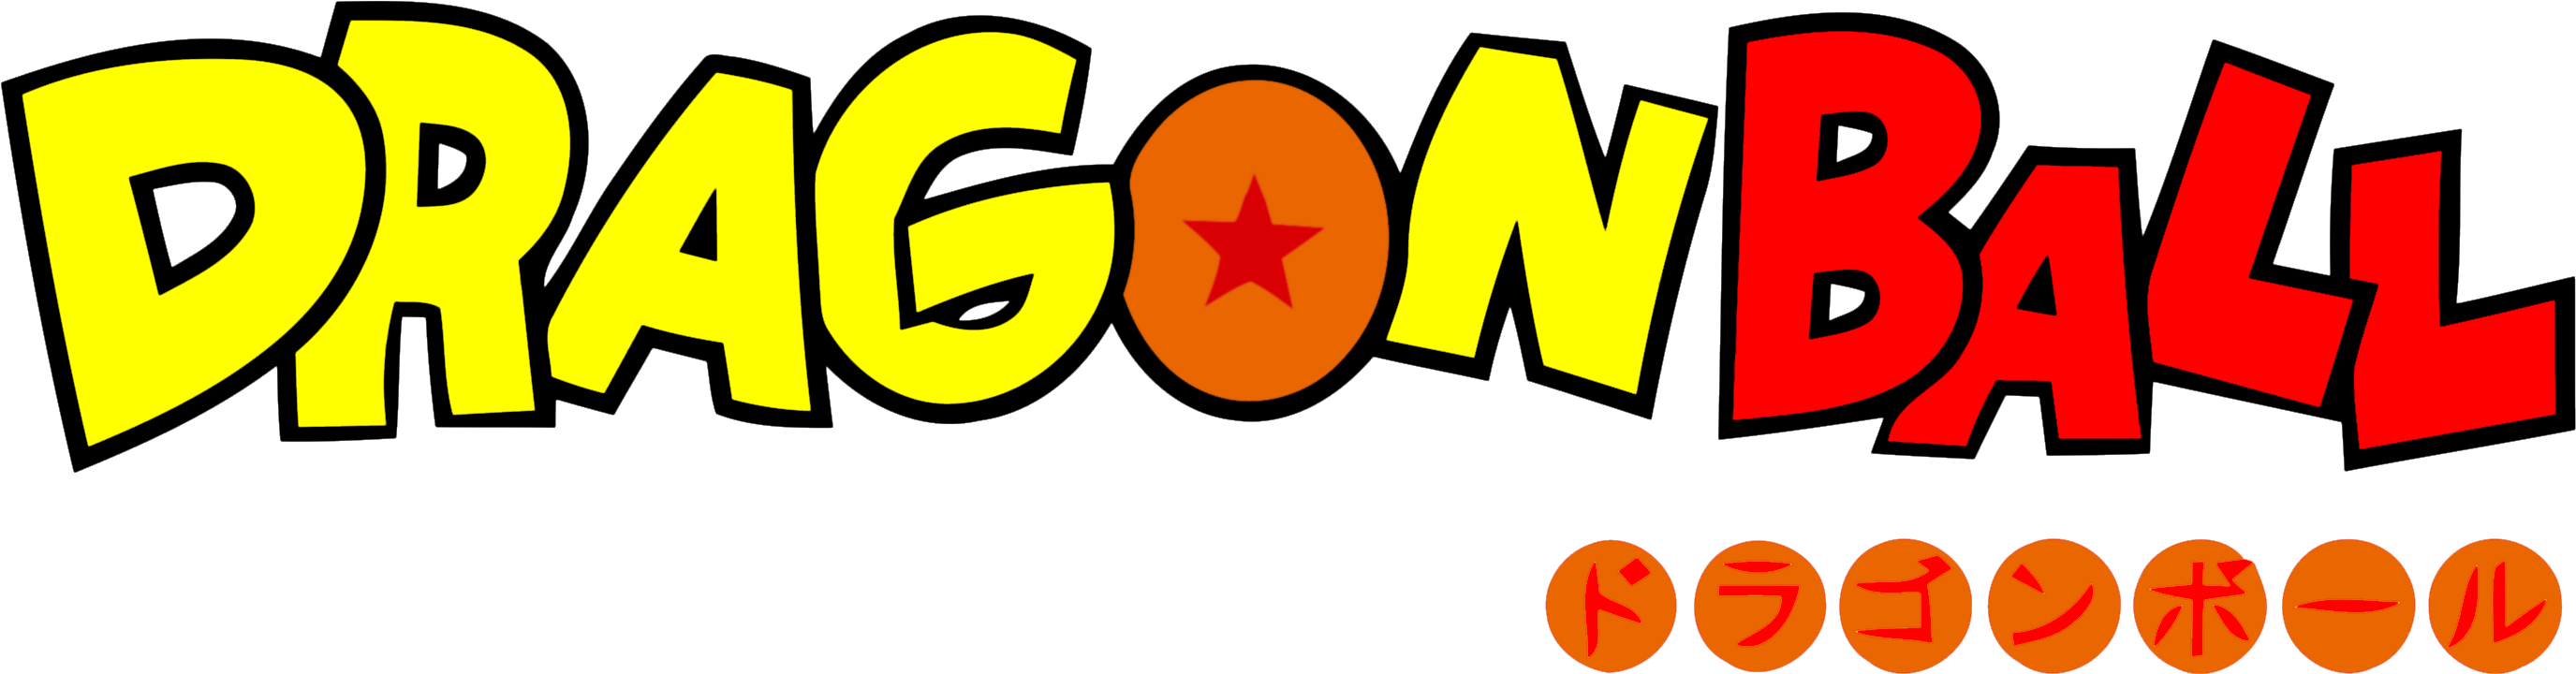 Goku gi logo, Dragonball 29167296 Vector Art at Vecteezy